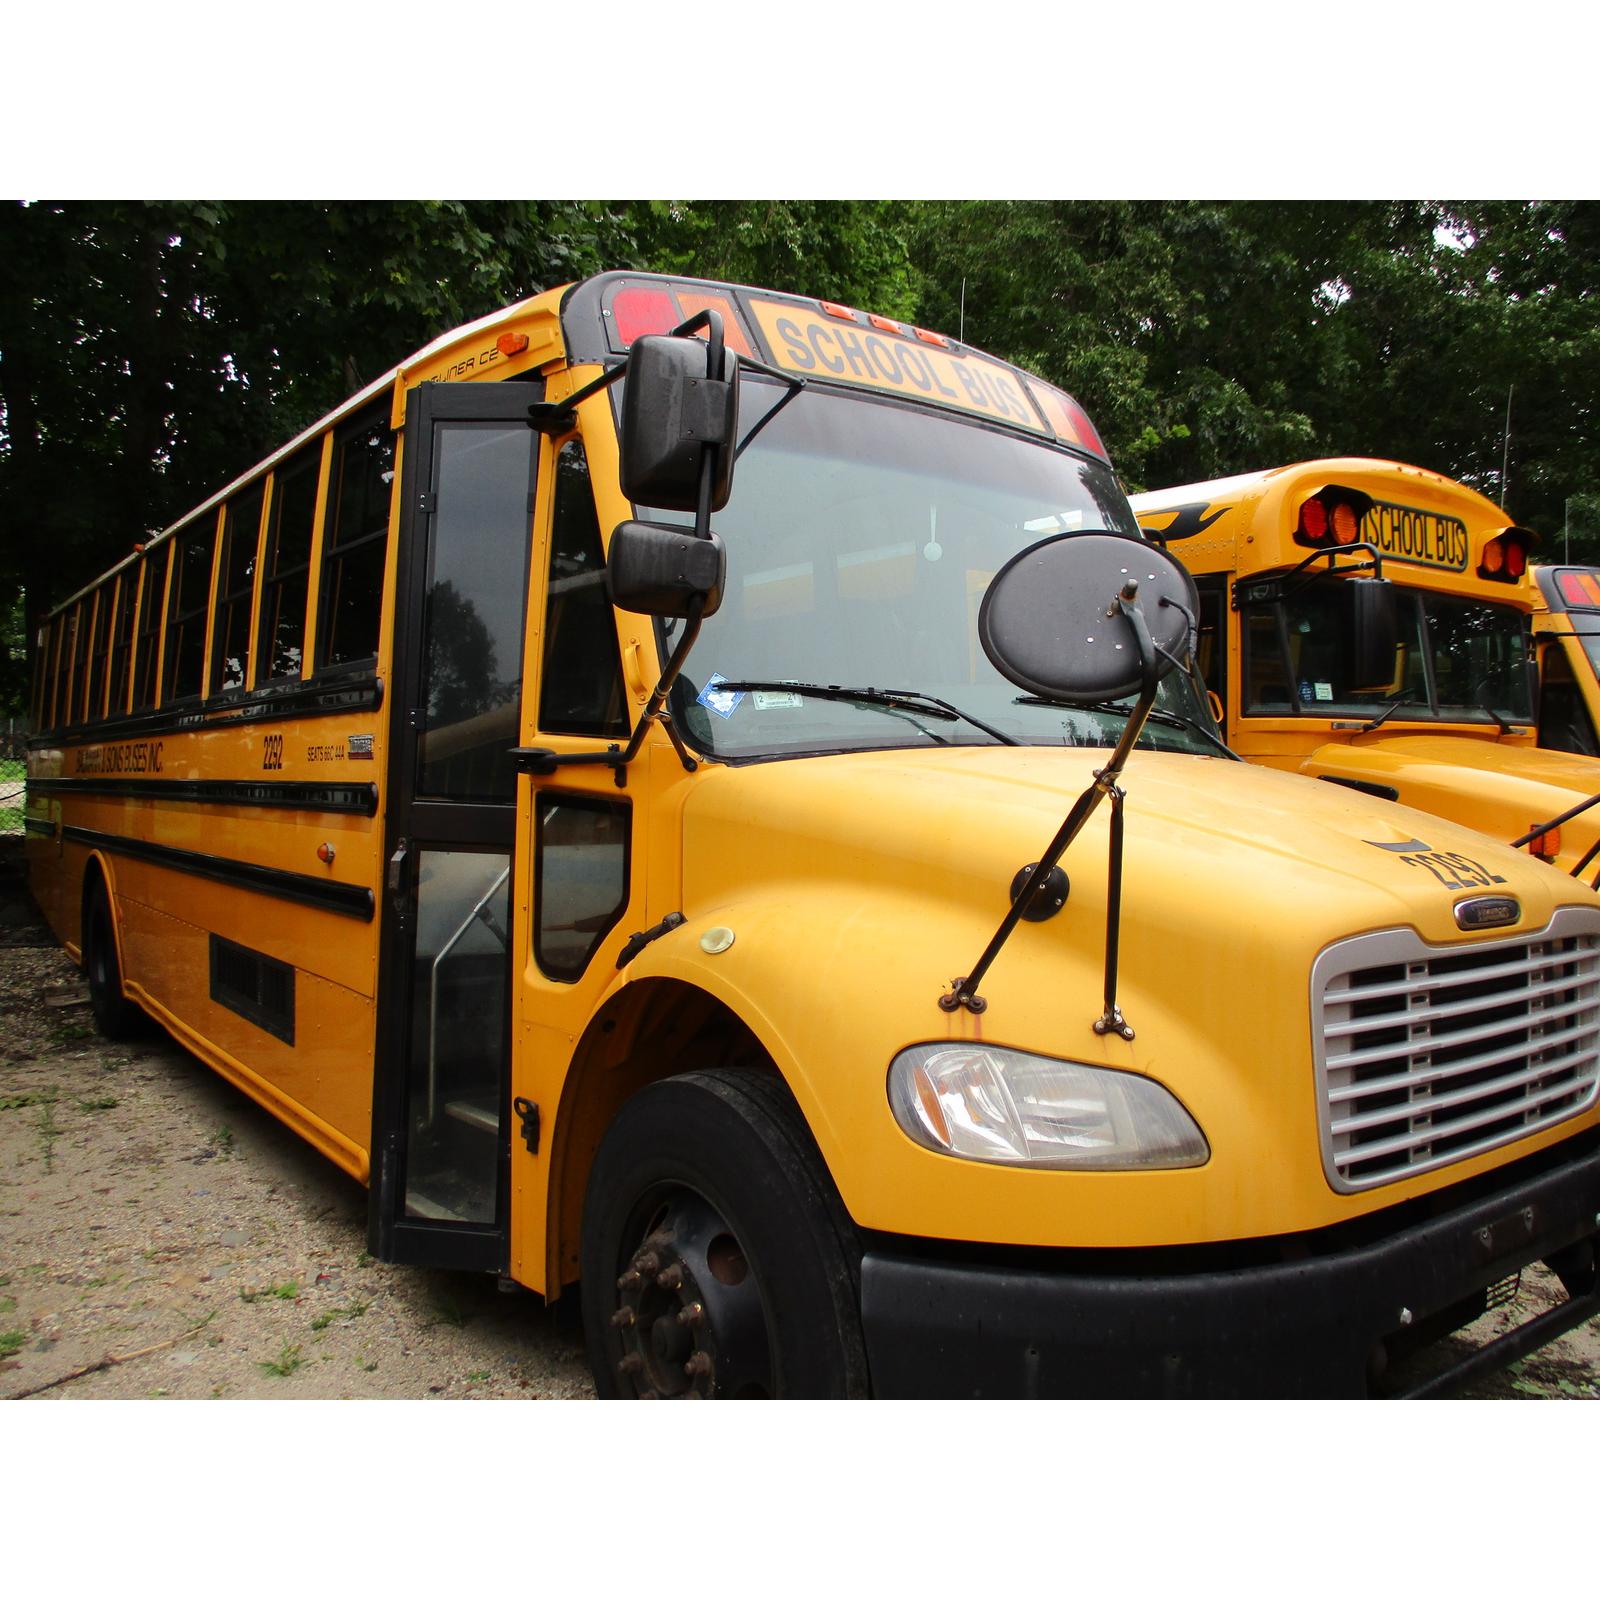 2022 freightliner school bus